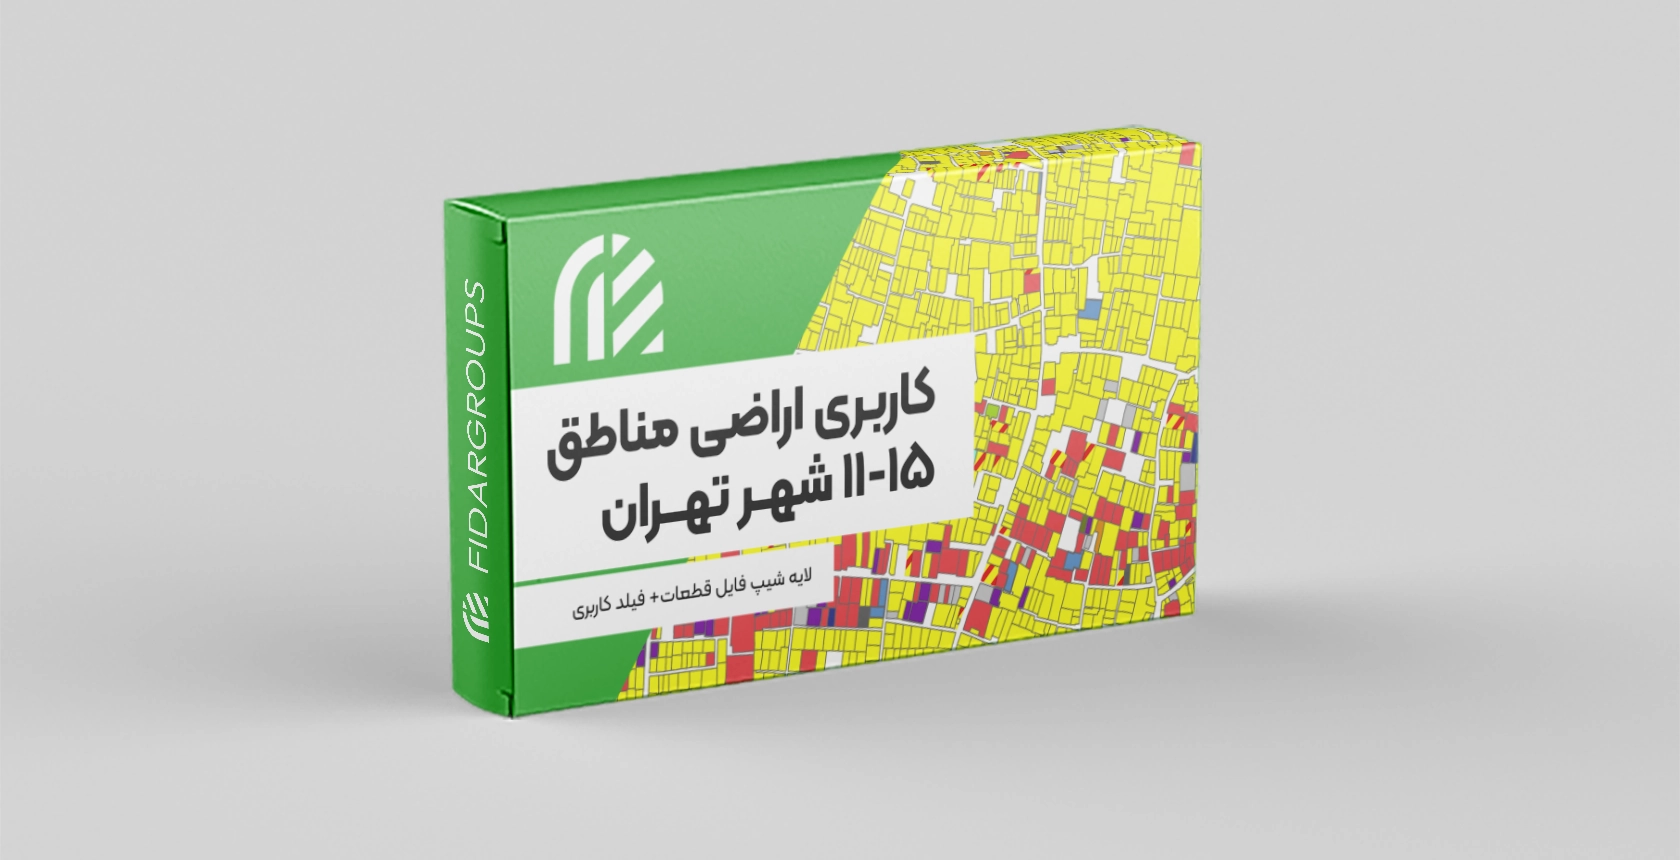 کاربری اراضی مناطق 11-15 تهران